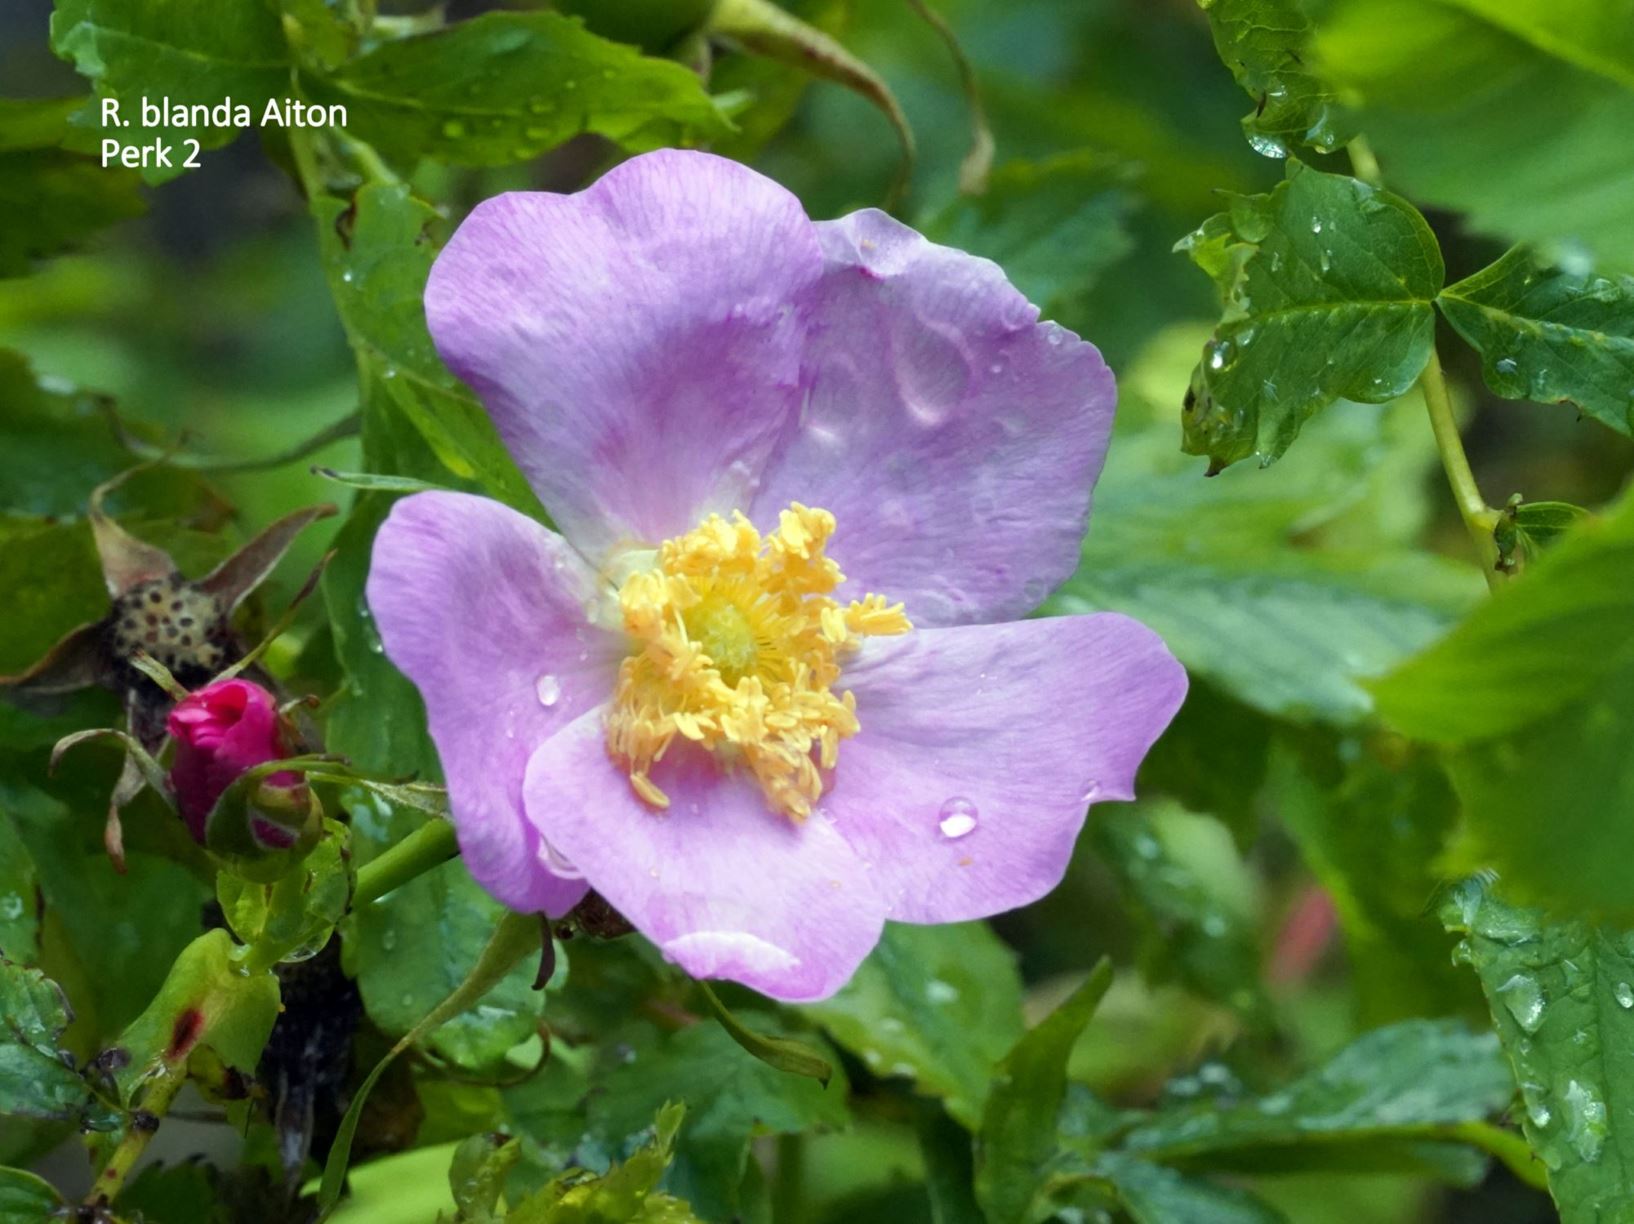 Rosa blanda - Esbladige roos; Smooth Rose, Meadow Rose, Hudson Bay Rose, Labrador Rose, Smooth rose, meadow/wild rose, or prairie rose